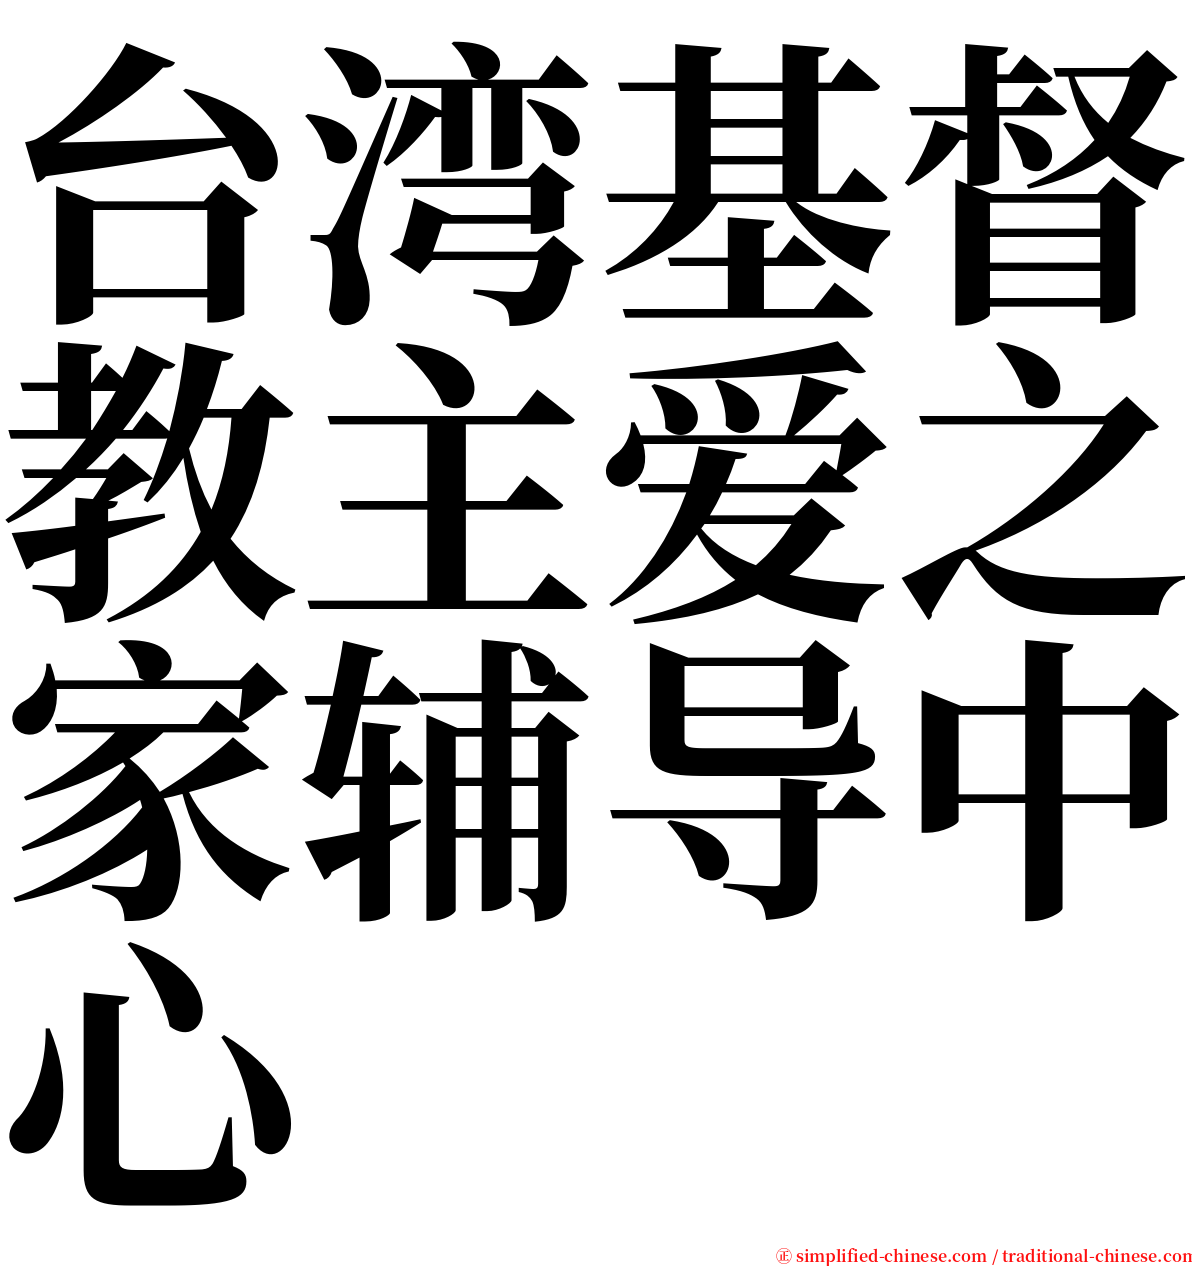 台湾基督教主爱之家辅导中心 serif font